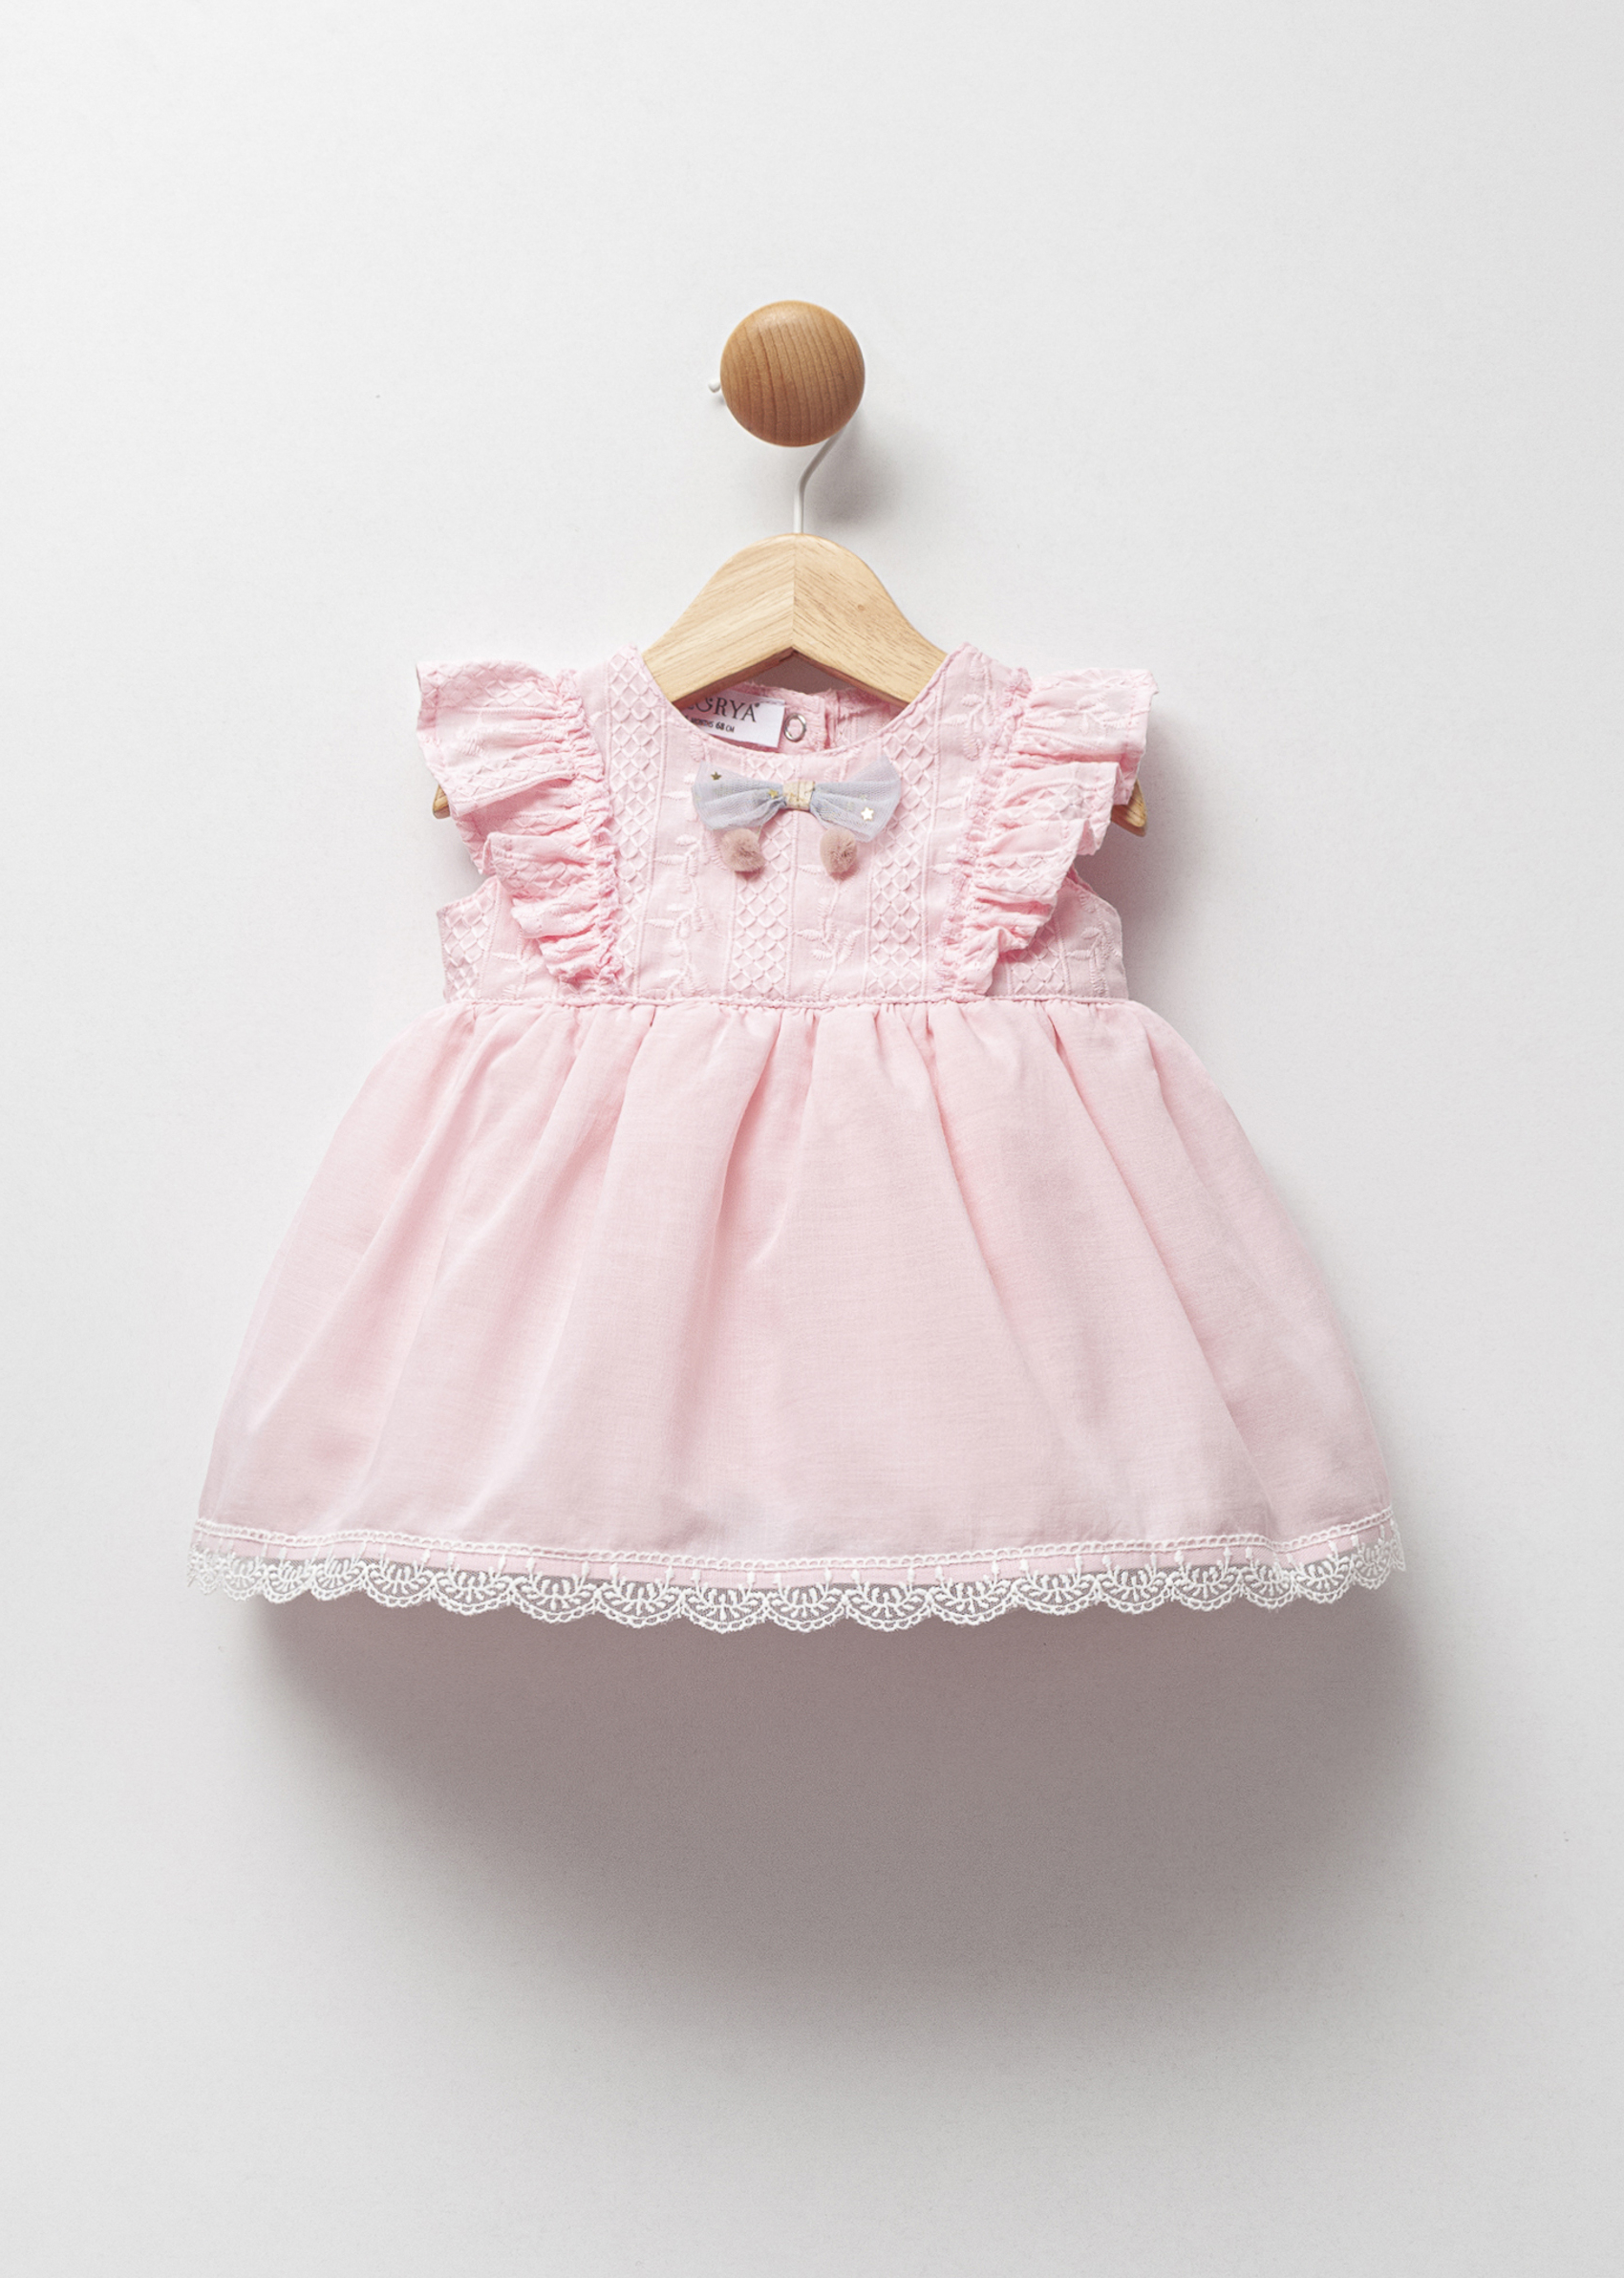 Ροζ φόρεμα με δαντέλα (3-18 μηνών)